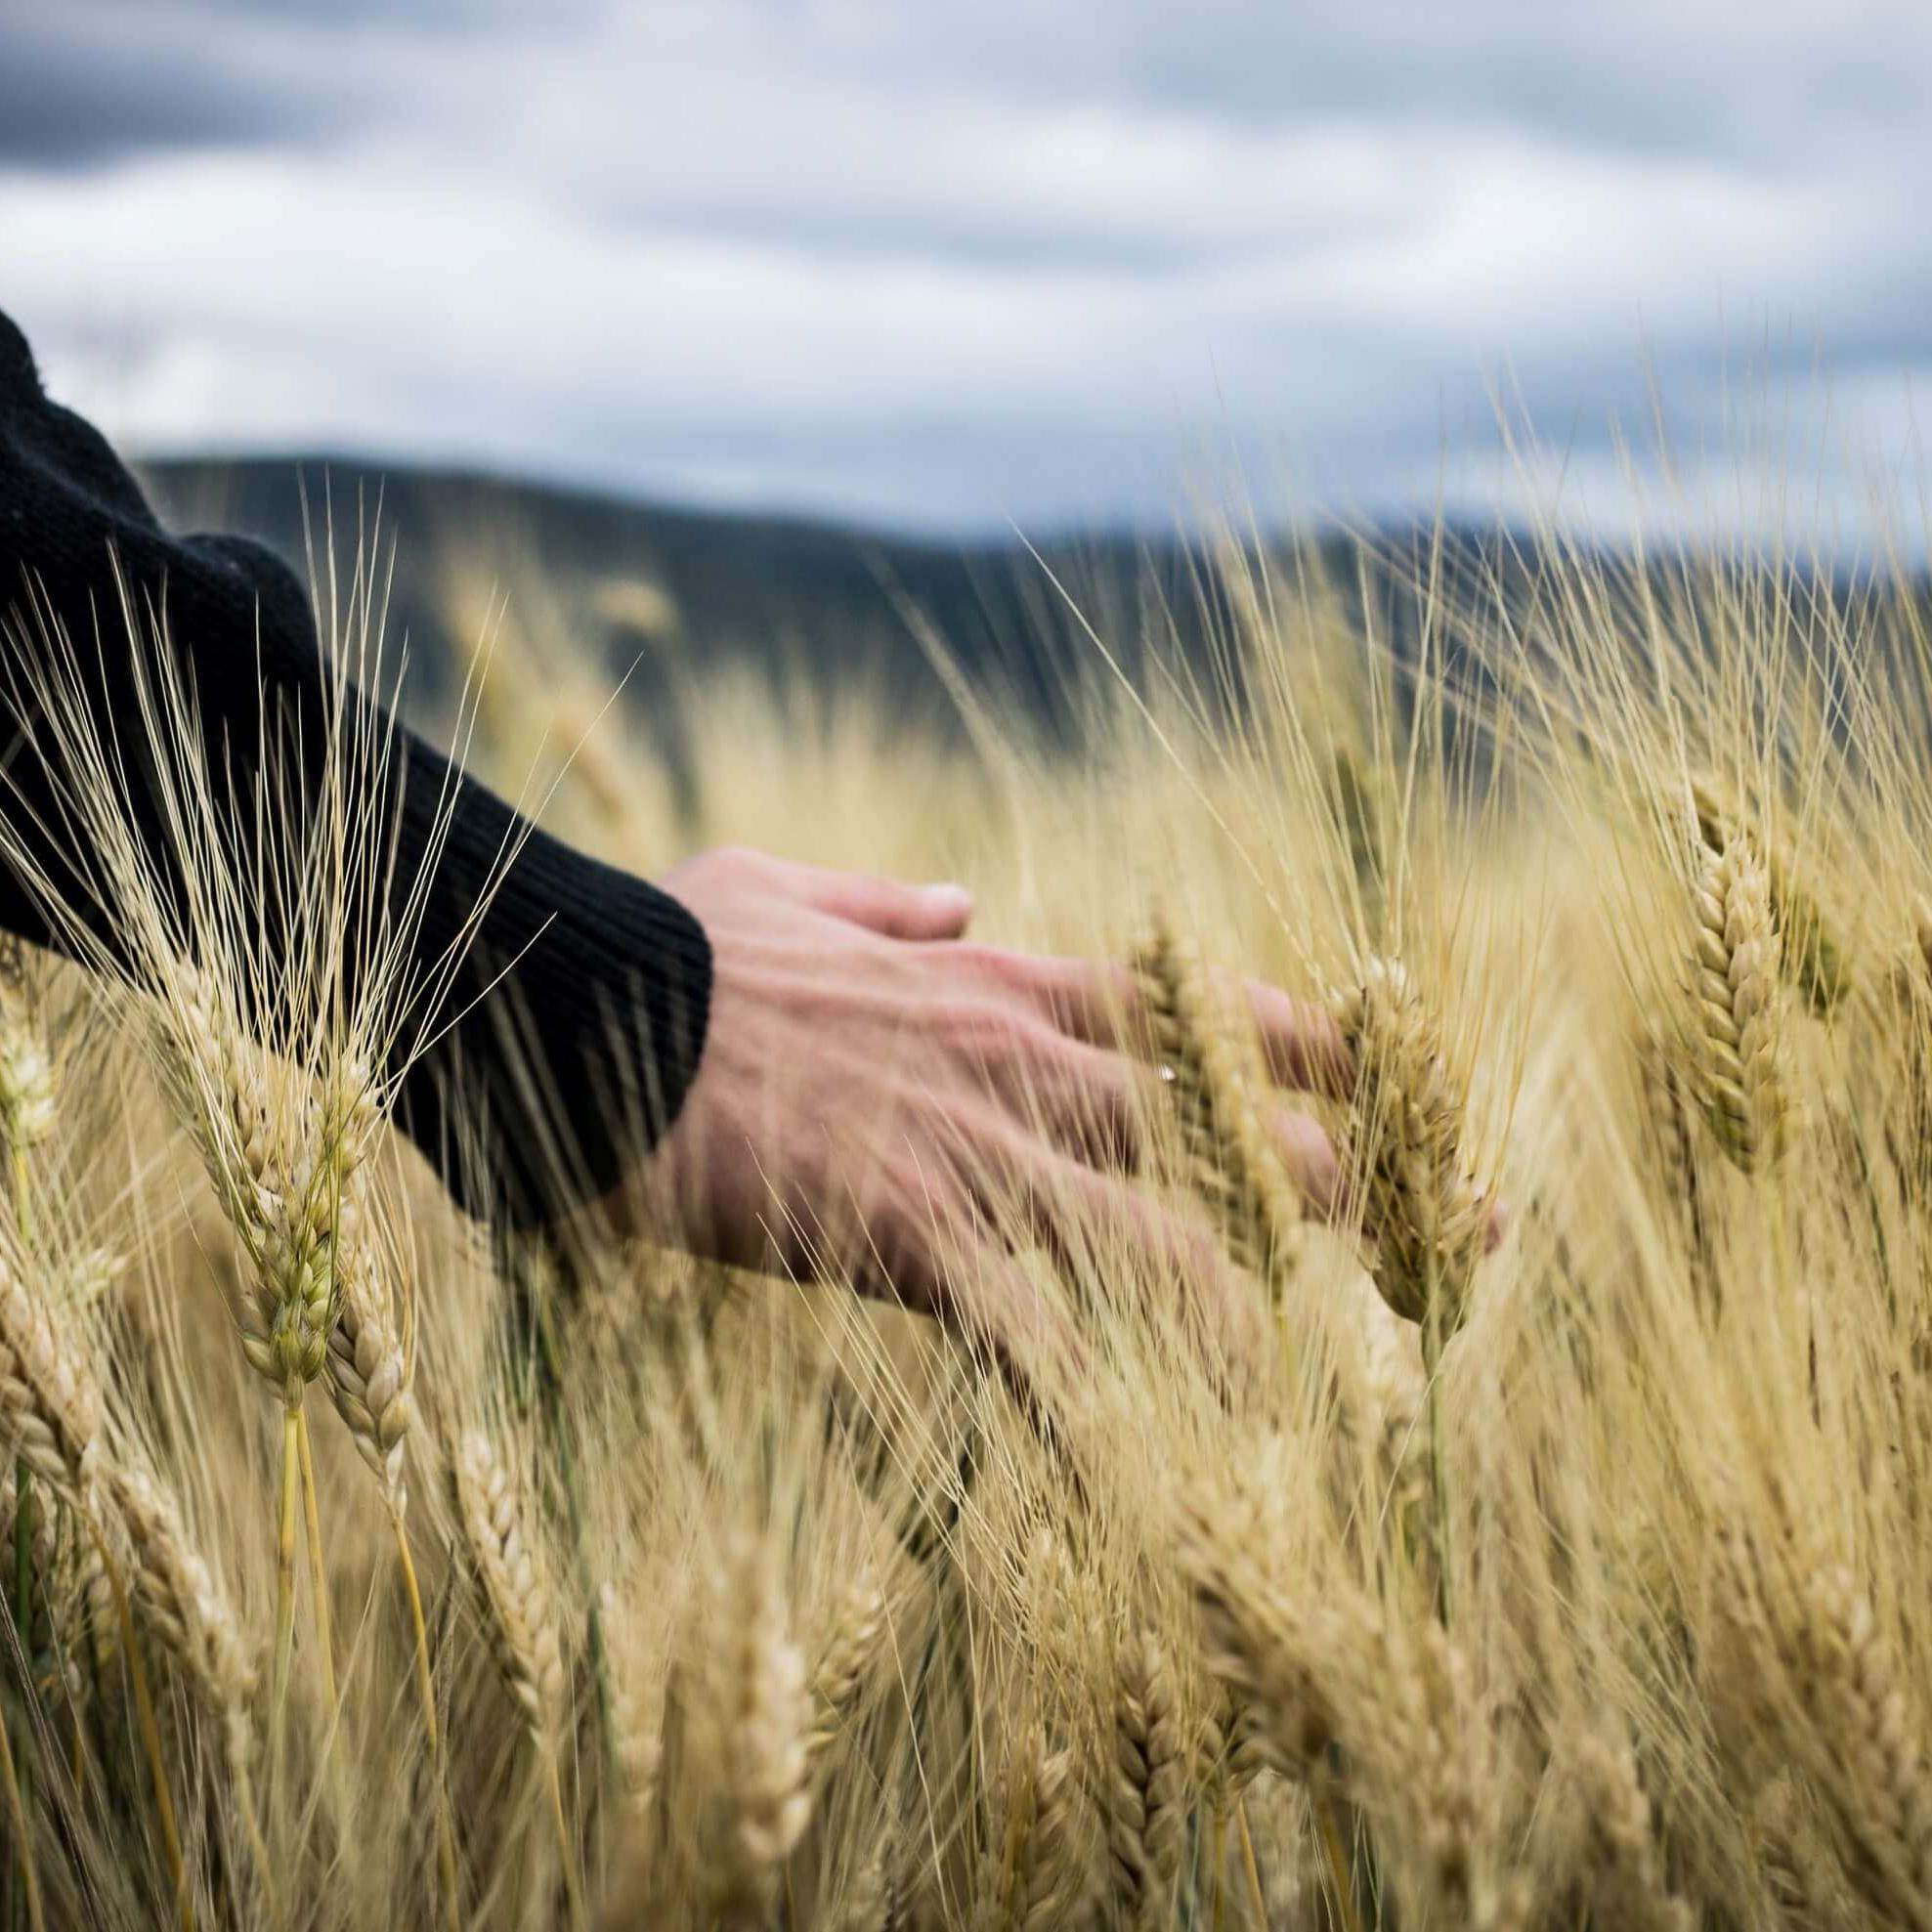 Roka in polje pšenice.